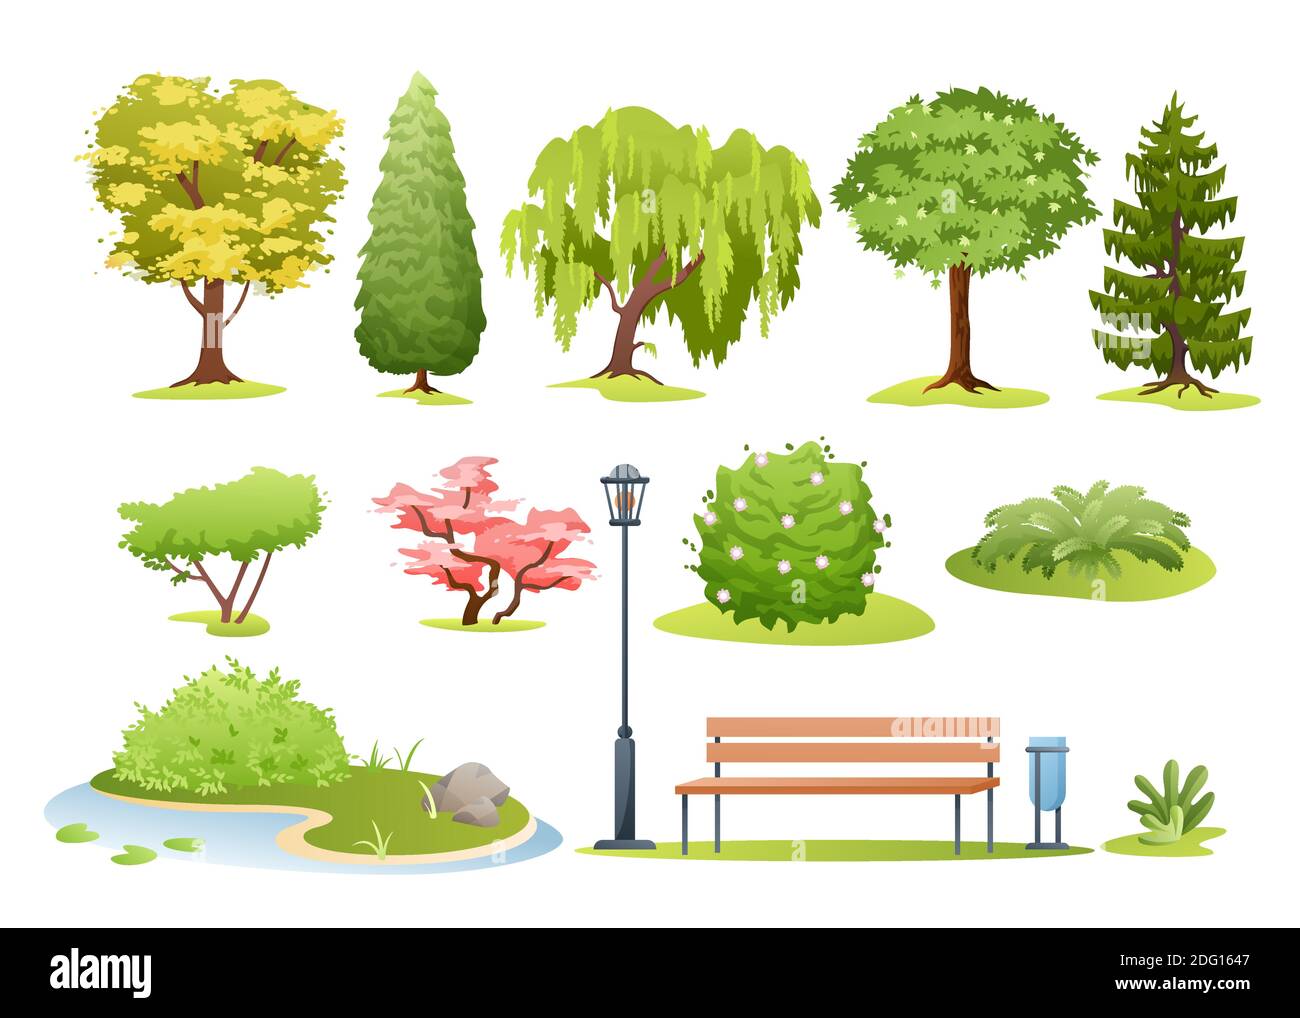 Bosque y árboles del parque, arbustos, helechos y banco del parque Ilustración del Vector